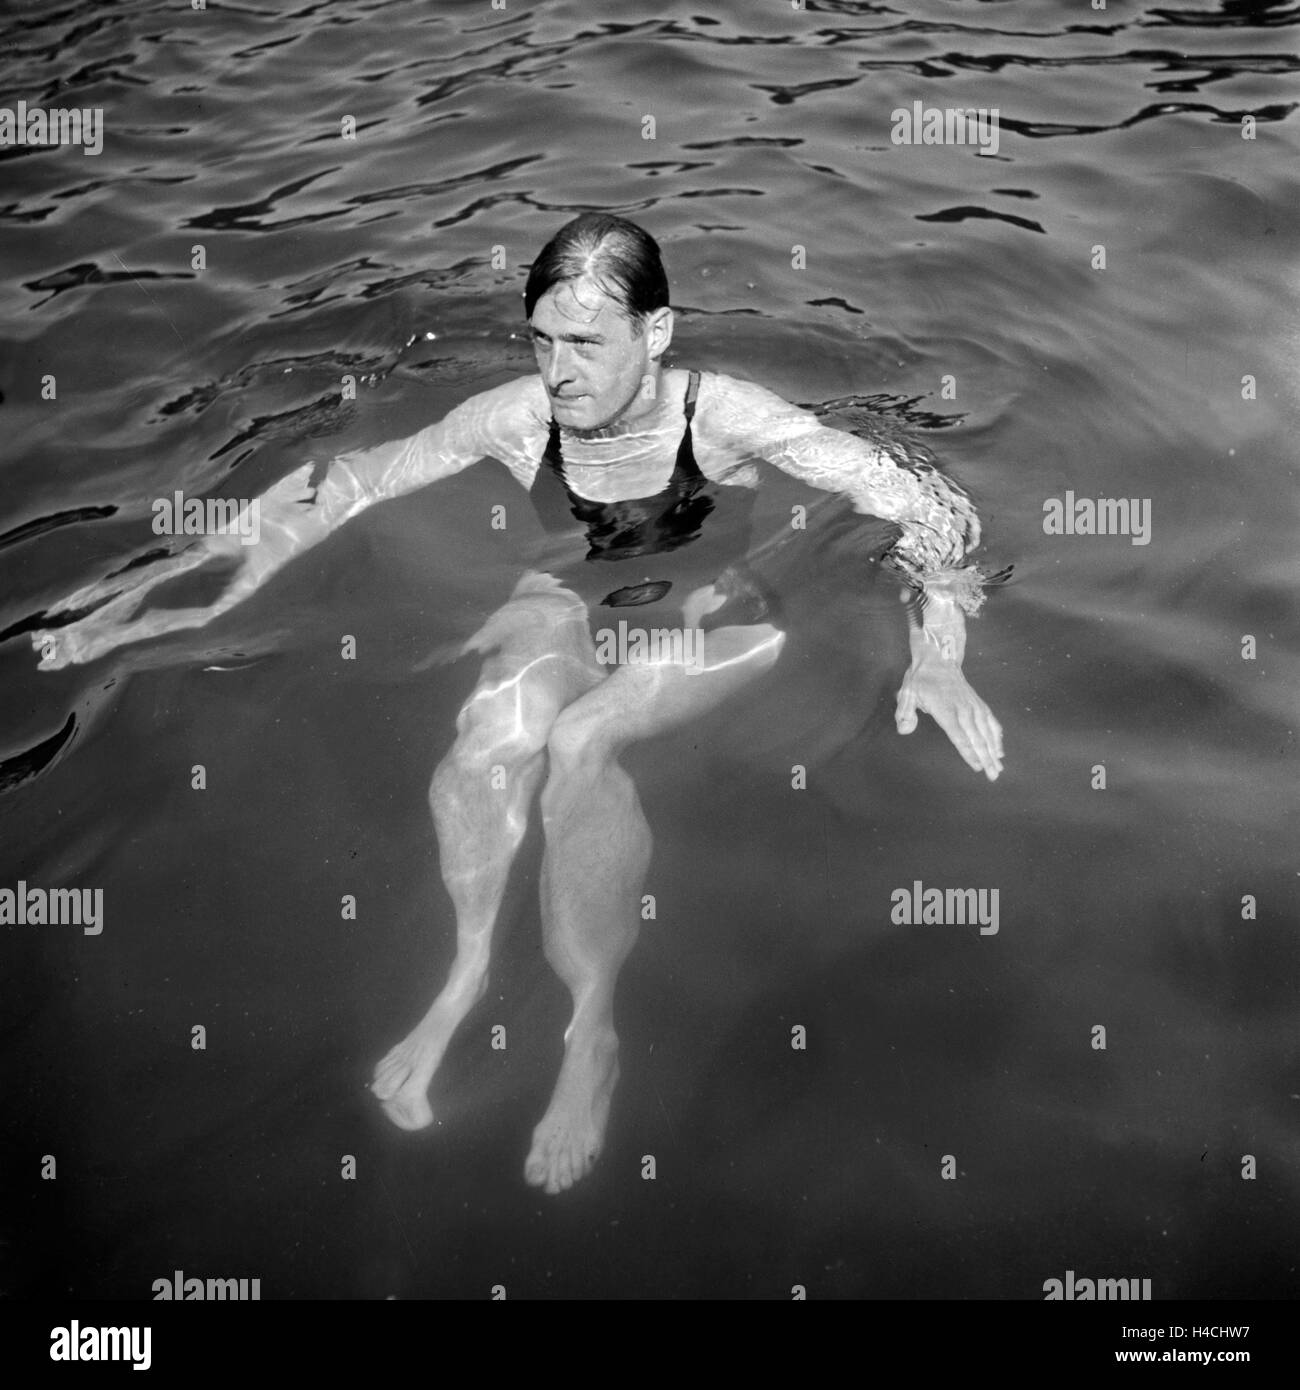 Ein Mann in einem Badeanzug schwimm in einem vedere, Deutschland 1930er Jahre. Un uomo in costume da bagno a nuotare in un lago, Germania 1930s. Foto Stock